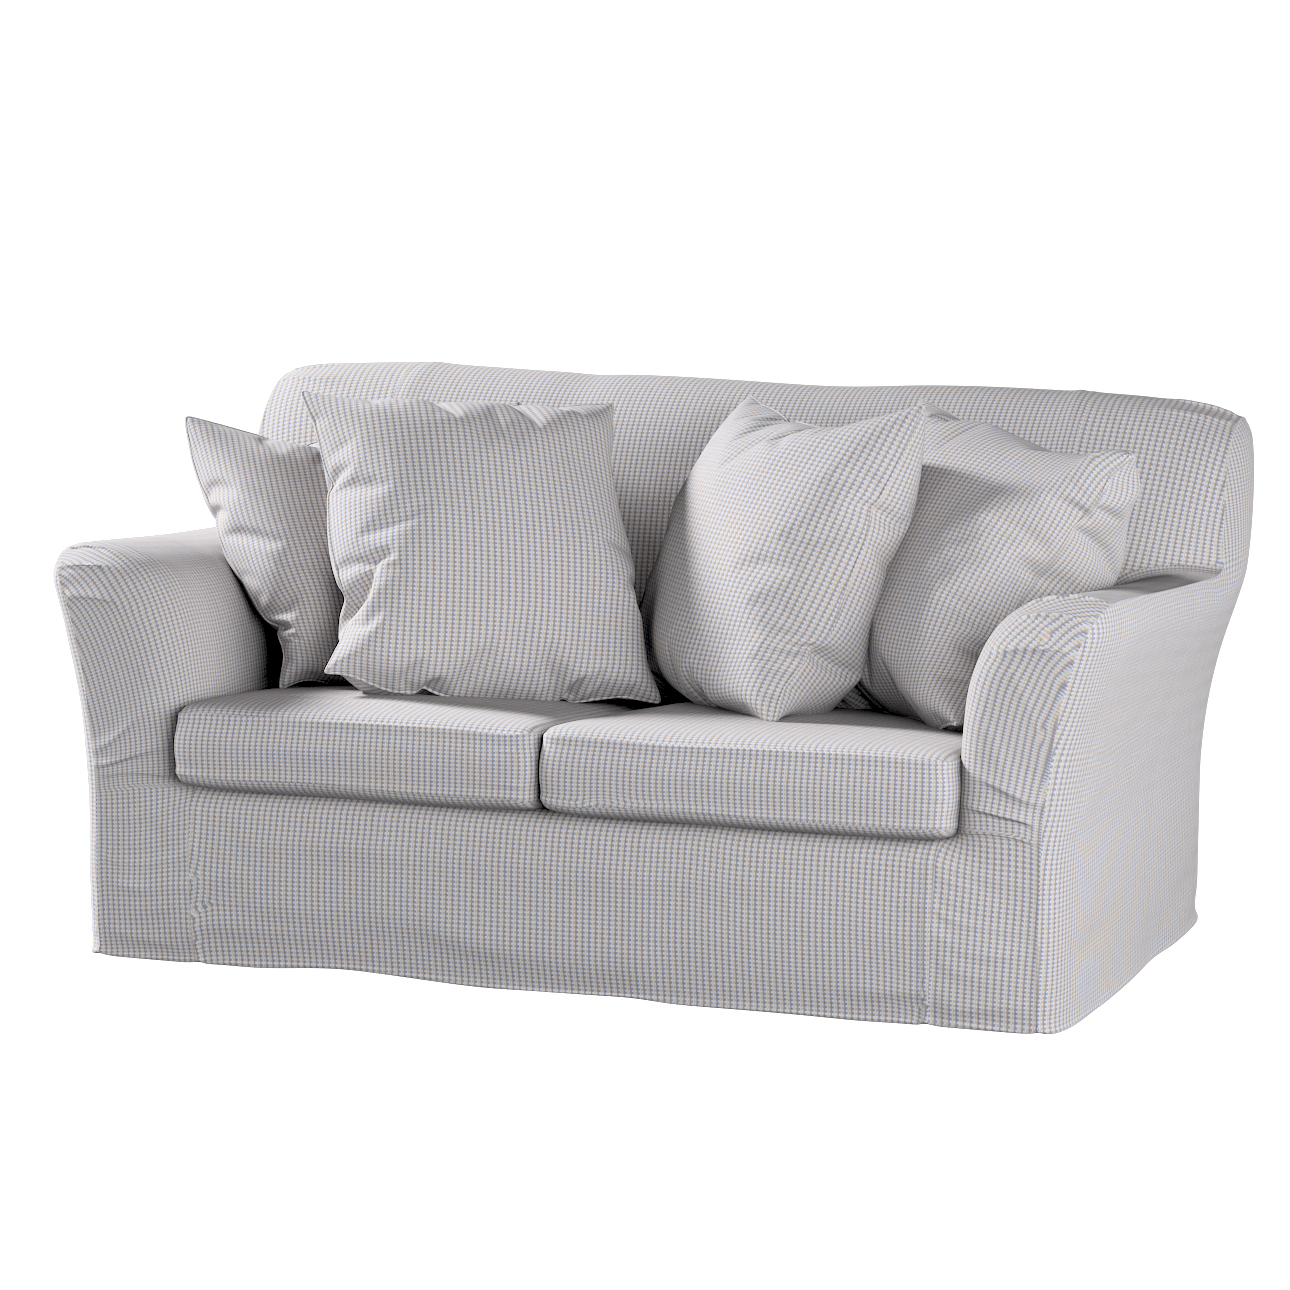 Bezug für Tomelilla 2-Sitzer Sofa nicht ausklappbar, beige-blau, Sofahusse, günstig online kaufen